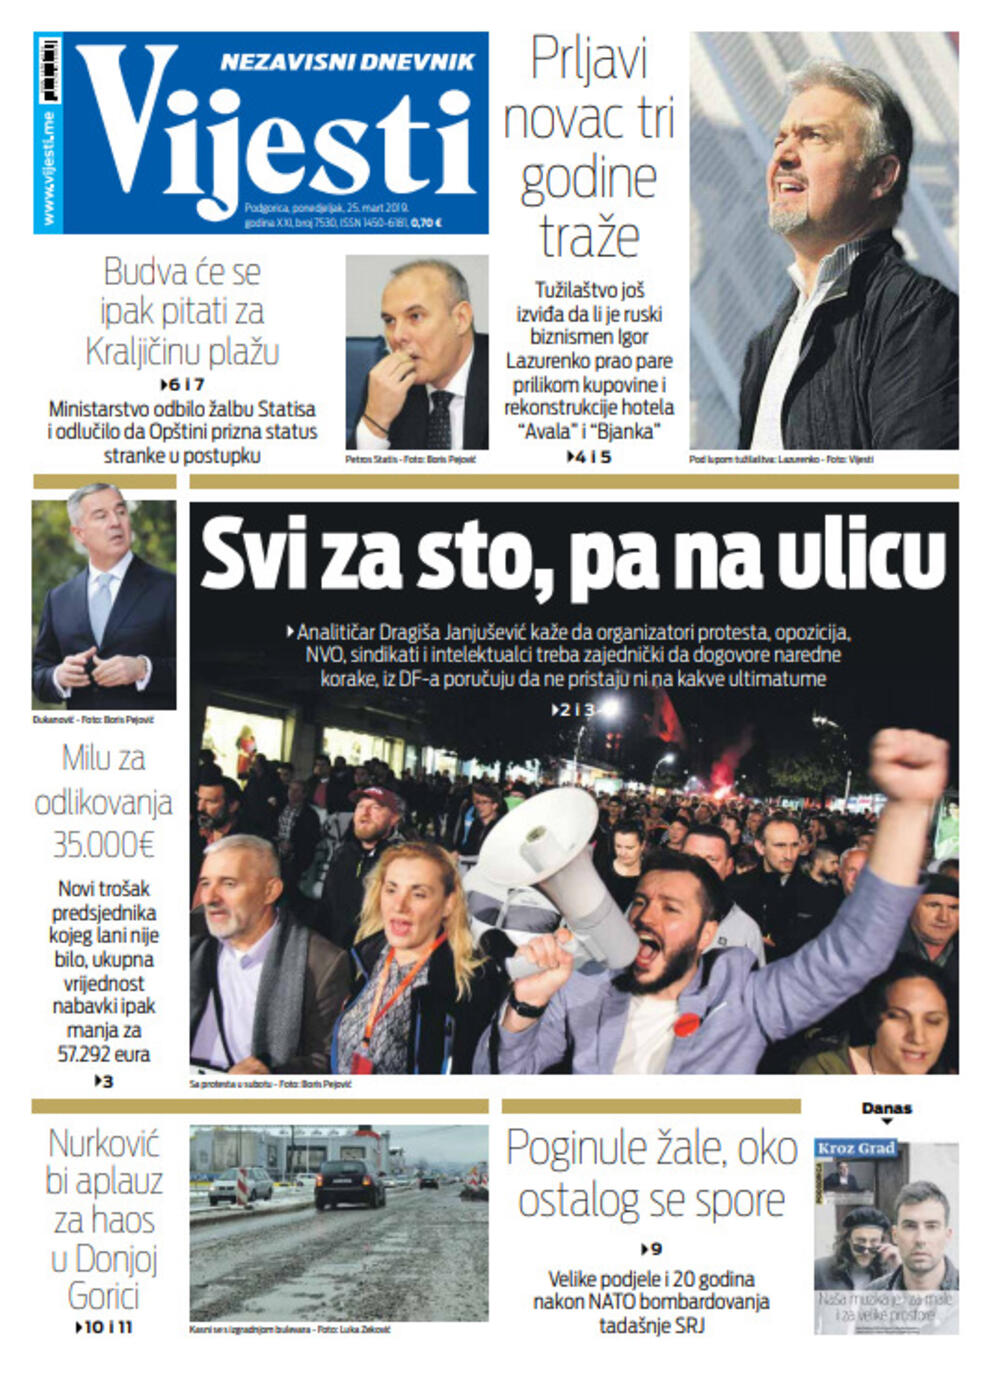 Naslovna strana "Vijesti" za 25. mart, Foto: "Vijesti"